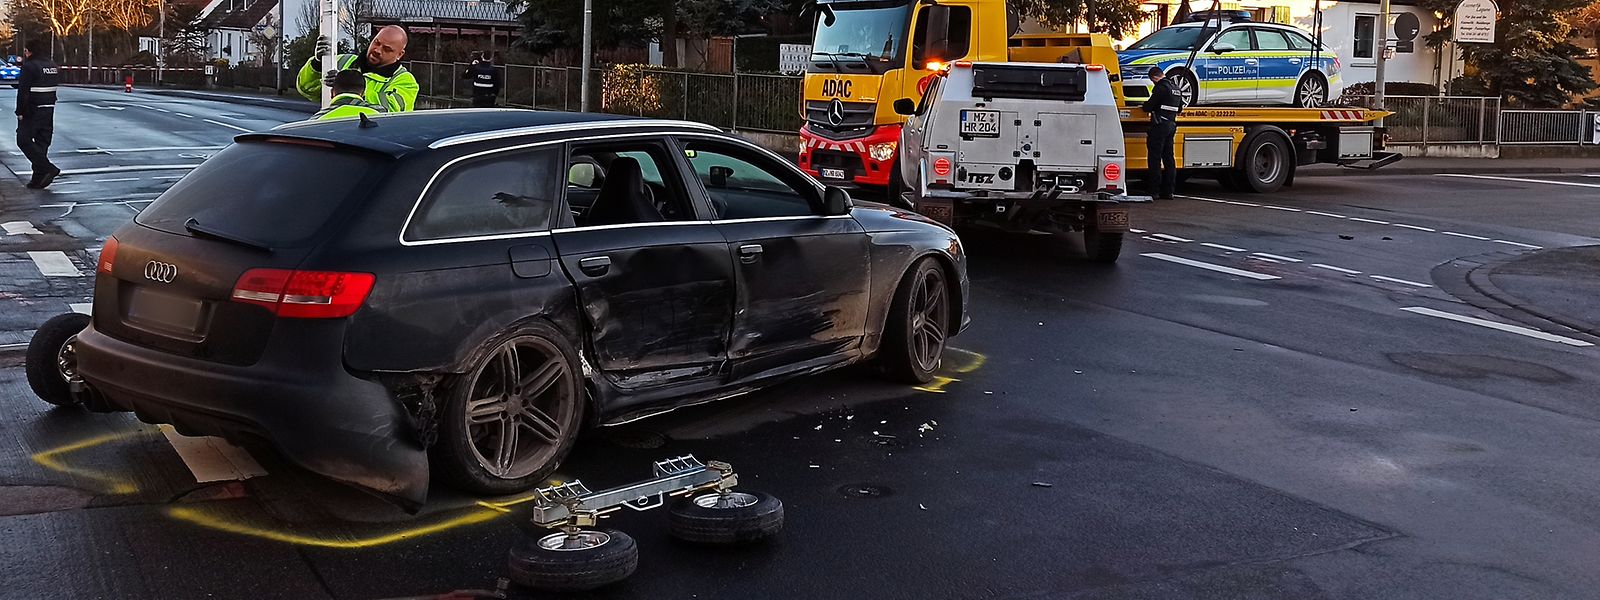 Nach der nächtlichen Sprengung eines Geldautomaten in Mainz-Mombach kam es zu einem Unfall mit einem Polizeiwagen.